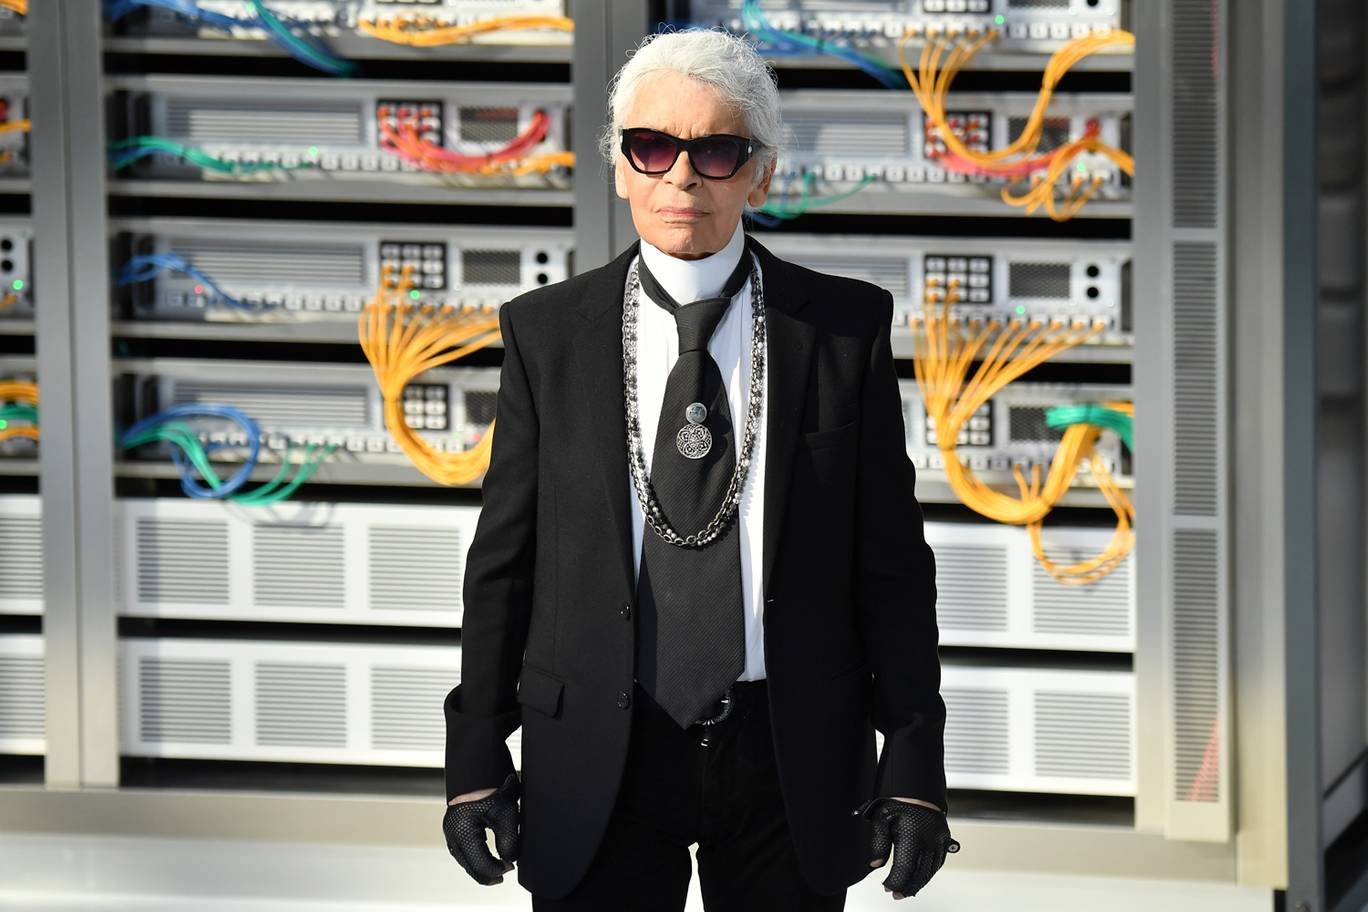 Karl Lagerfeld, Chanel Fashion Designer, Died At 85 JUDY BestViews's Blog